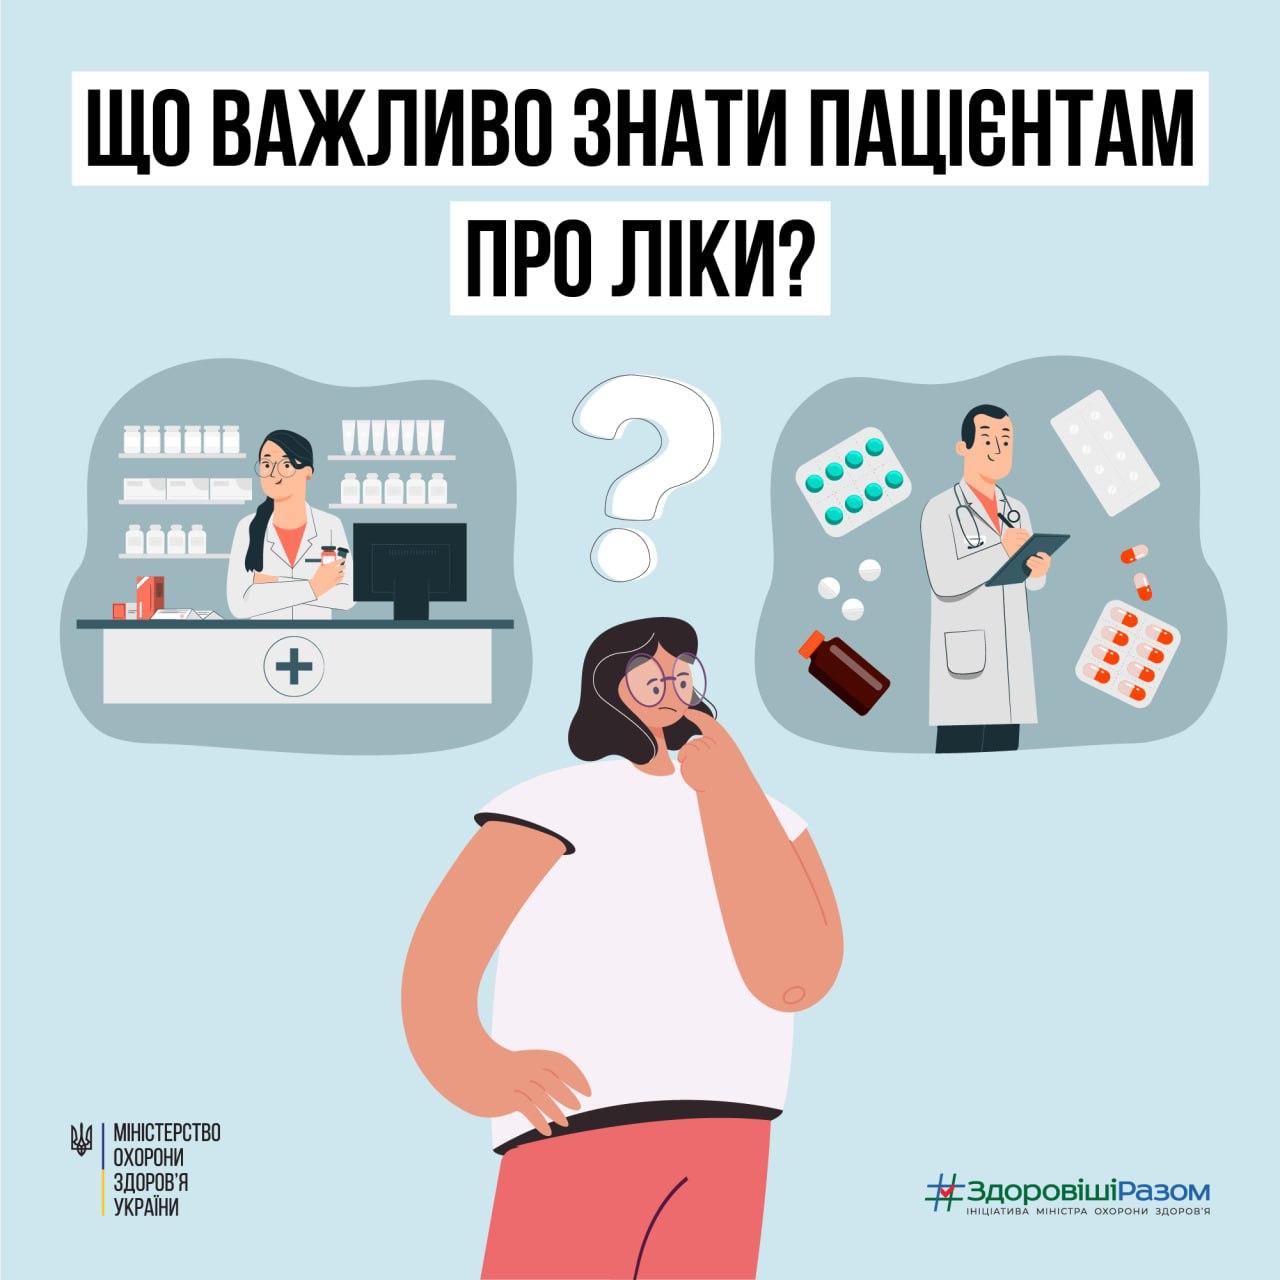 Що важливо знати пацієнтам про ліки? | Донецька Обласна Державна адміністрація